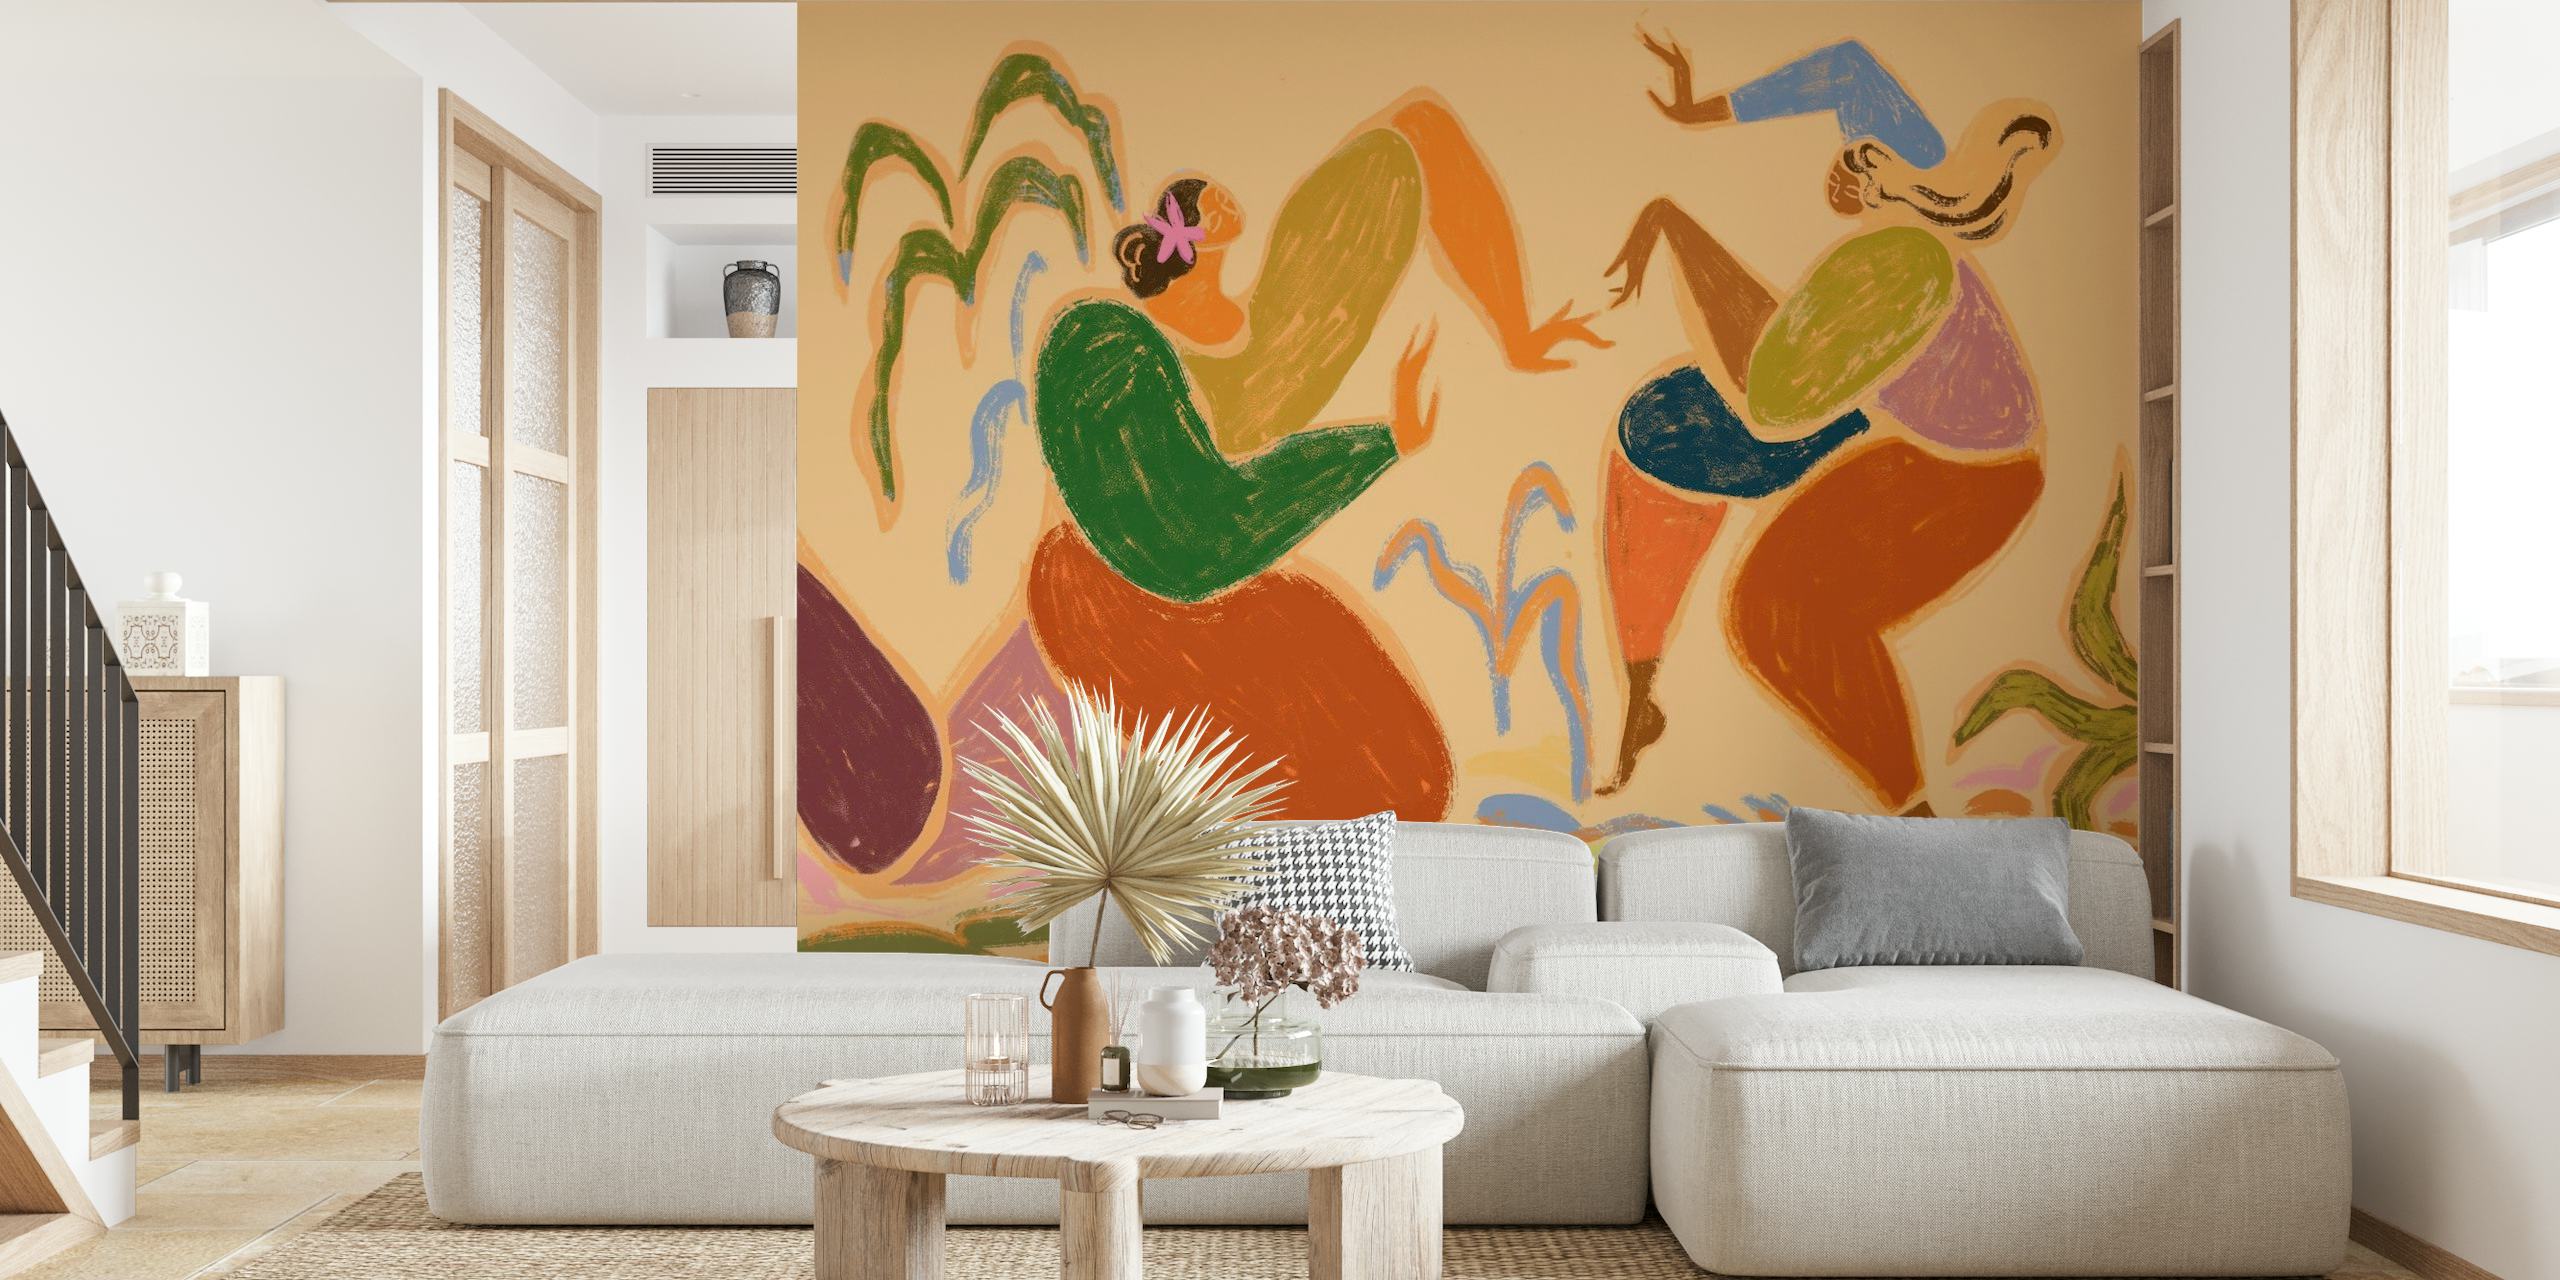 Mural de pared con temática de danza abstracta y colores tierra que representan figuras rítmicas en movimiento.